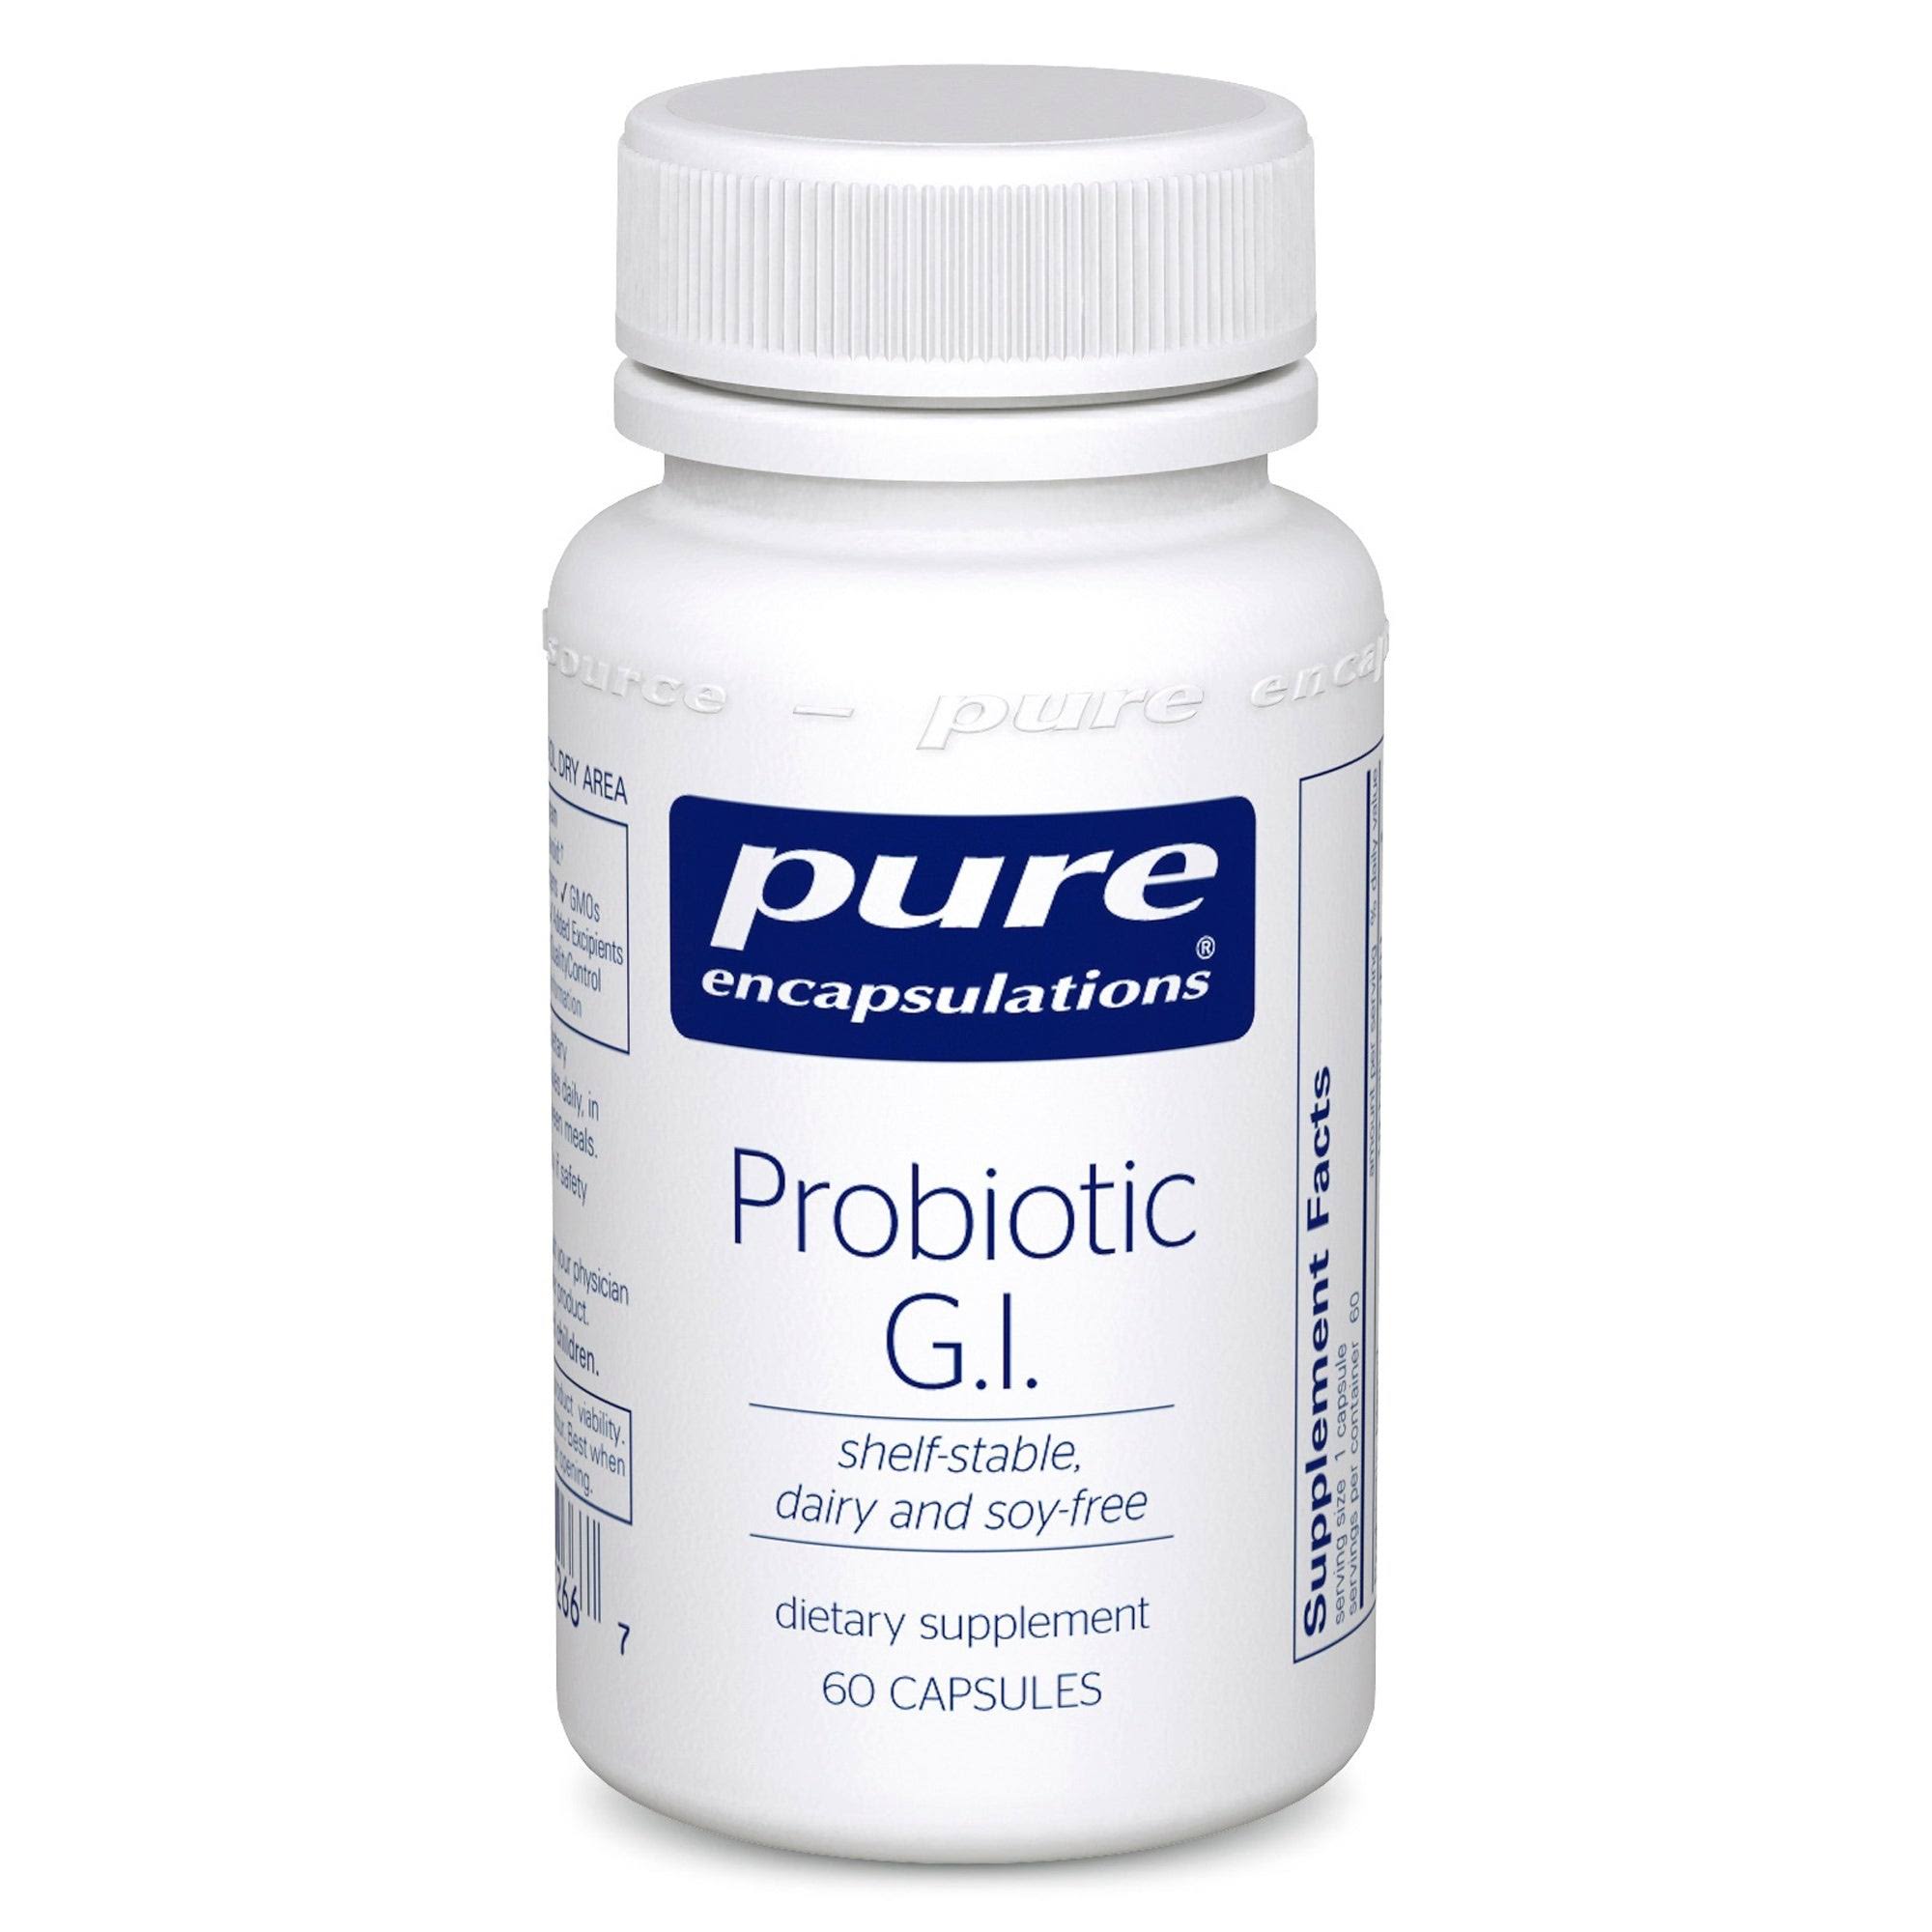 Pure Encapsulations - Probiotic G.I. - 60 Capsules